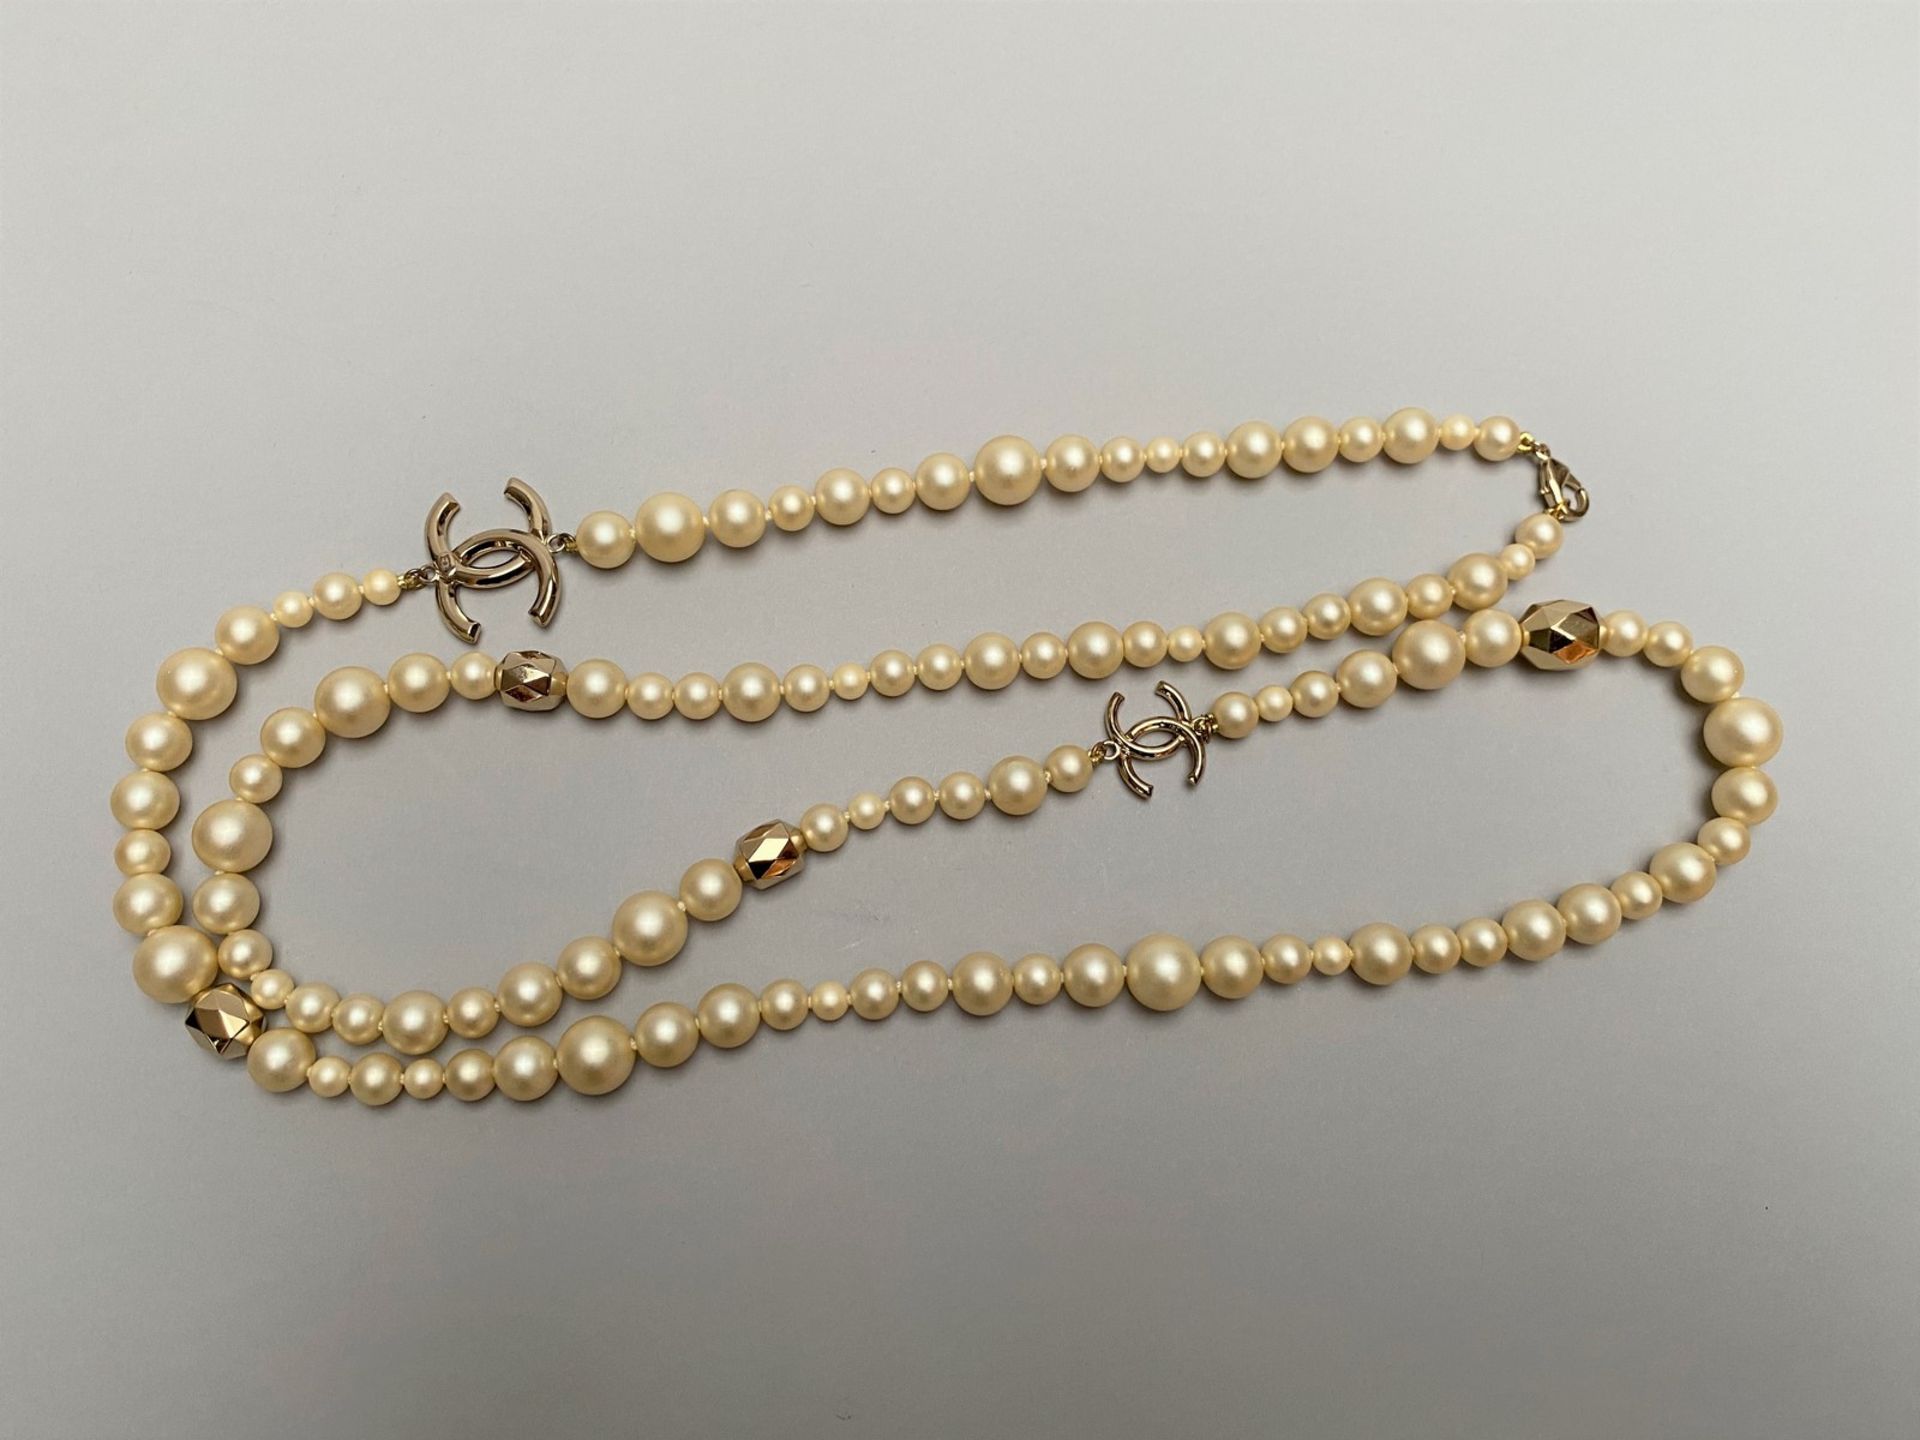 CHANEL - SAUTOIR en perles d'imitation entrecoupées de perles et sigles CC en [...] - Image 2 of 3